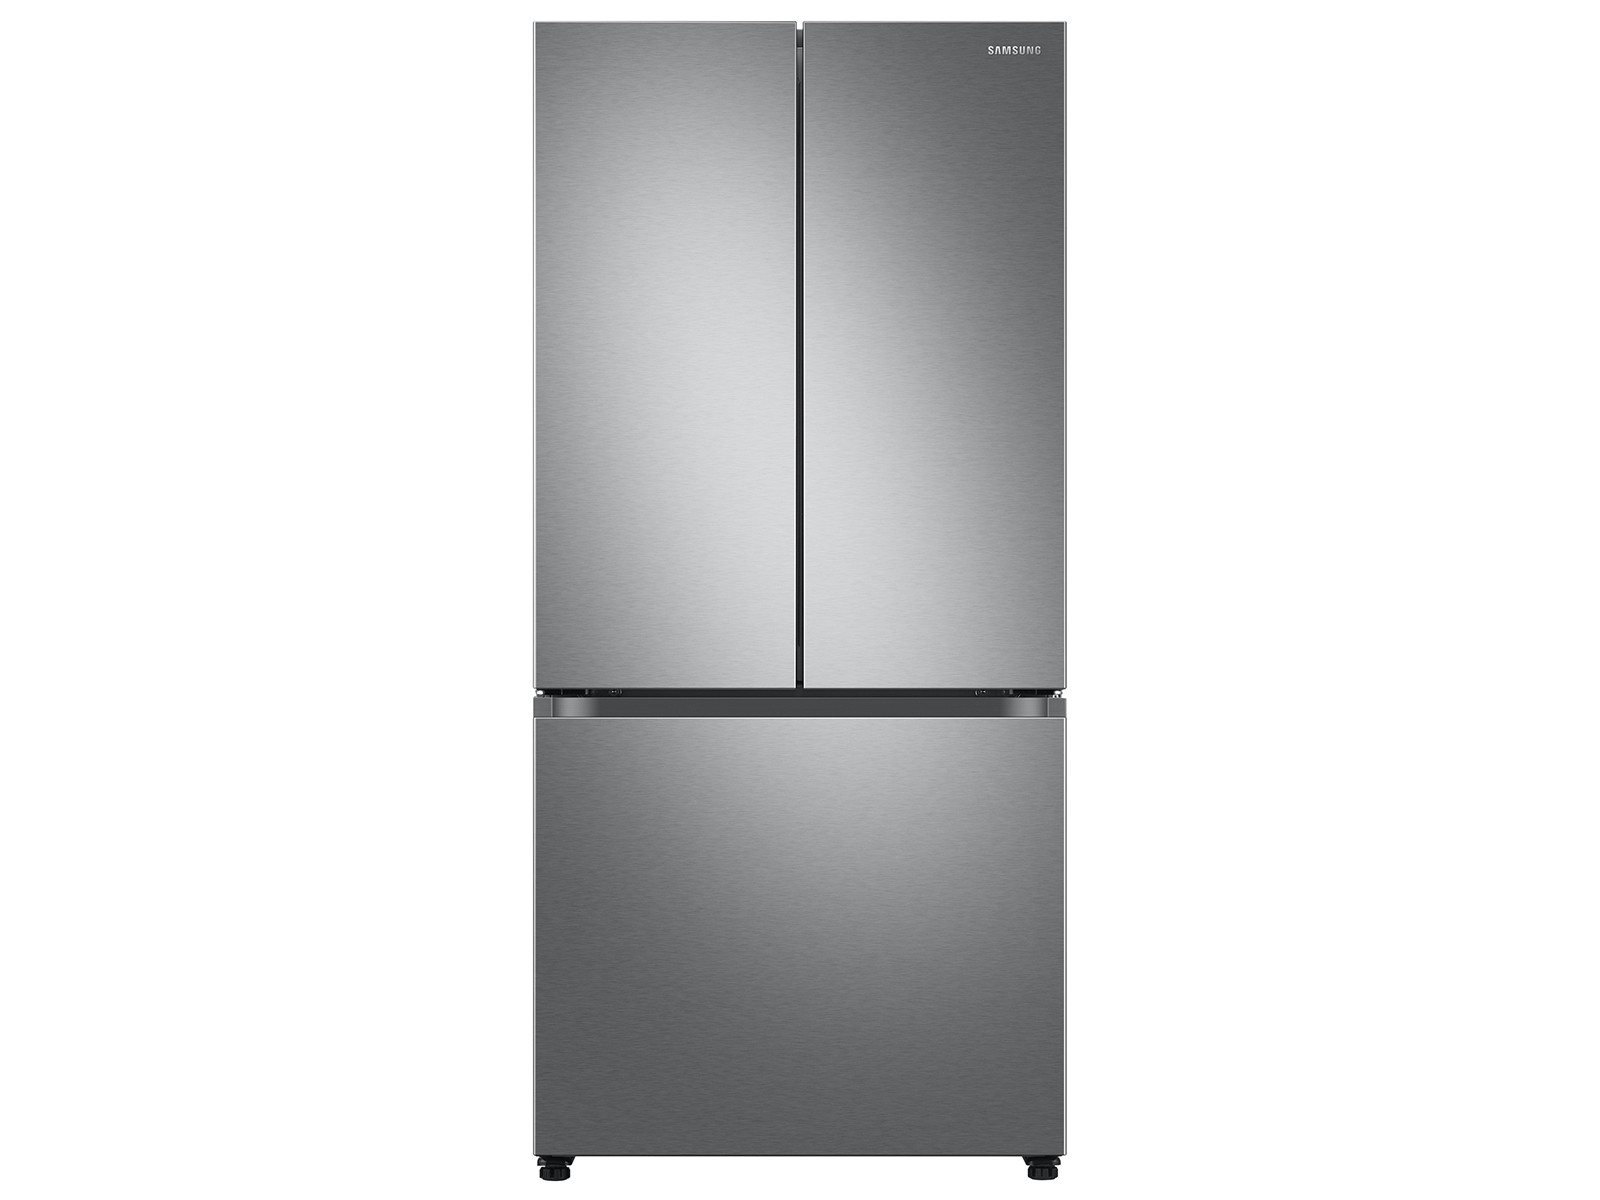 Photos - Fridge Samsung 25 cu. ft. 33" 3-Door French Door Refrigerator with Beverage Cente 